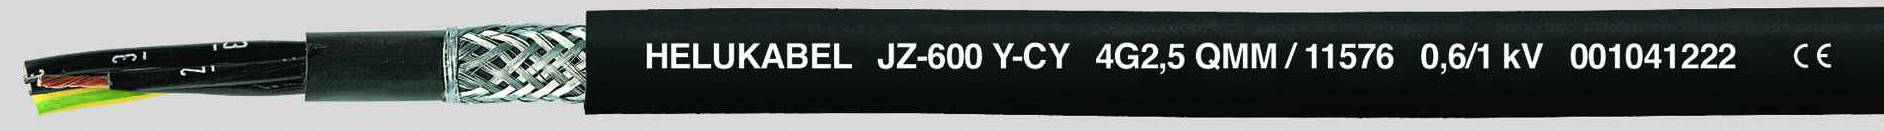 HELUKABEL JZ-600-Y-CY Steuerleitung 7 G 2.50 mm² Schwarz 11578-500 500 m